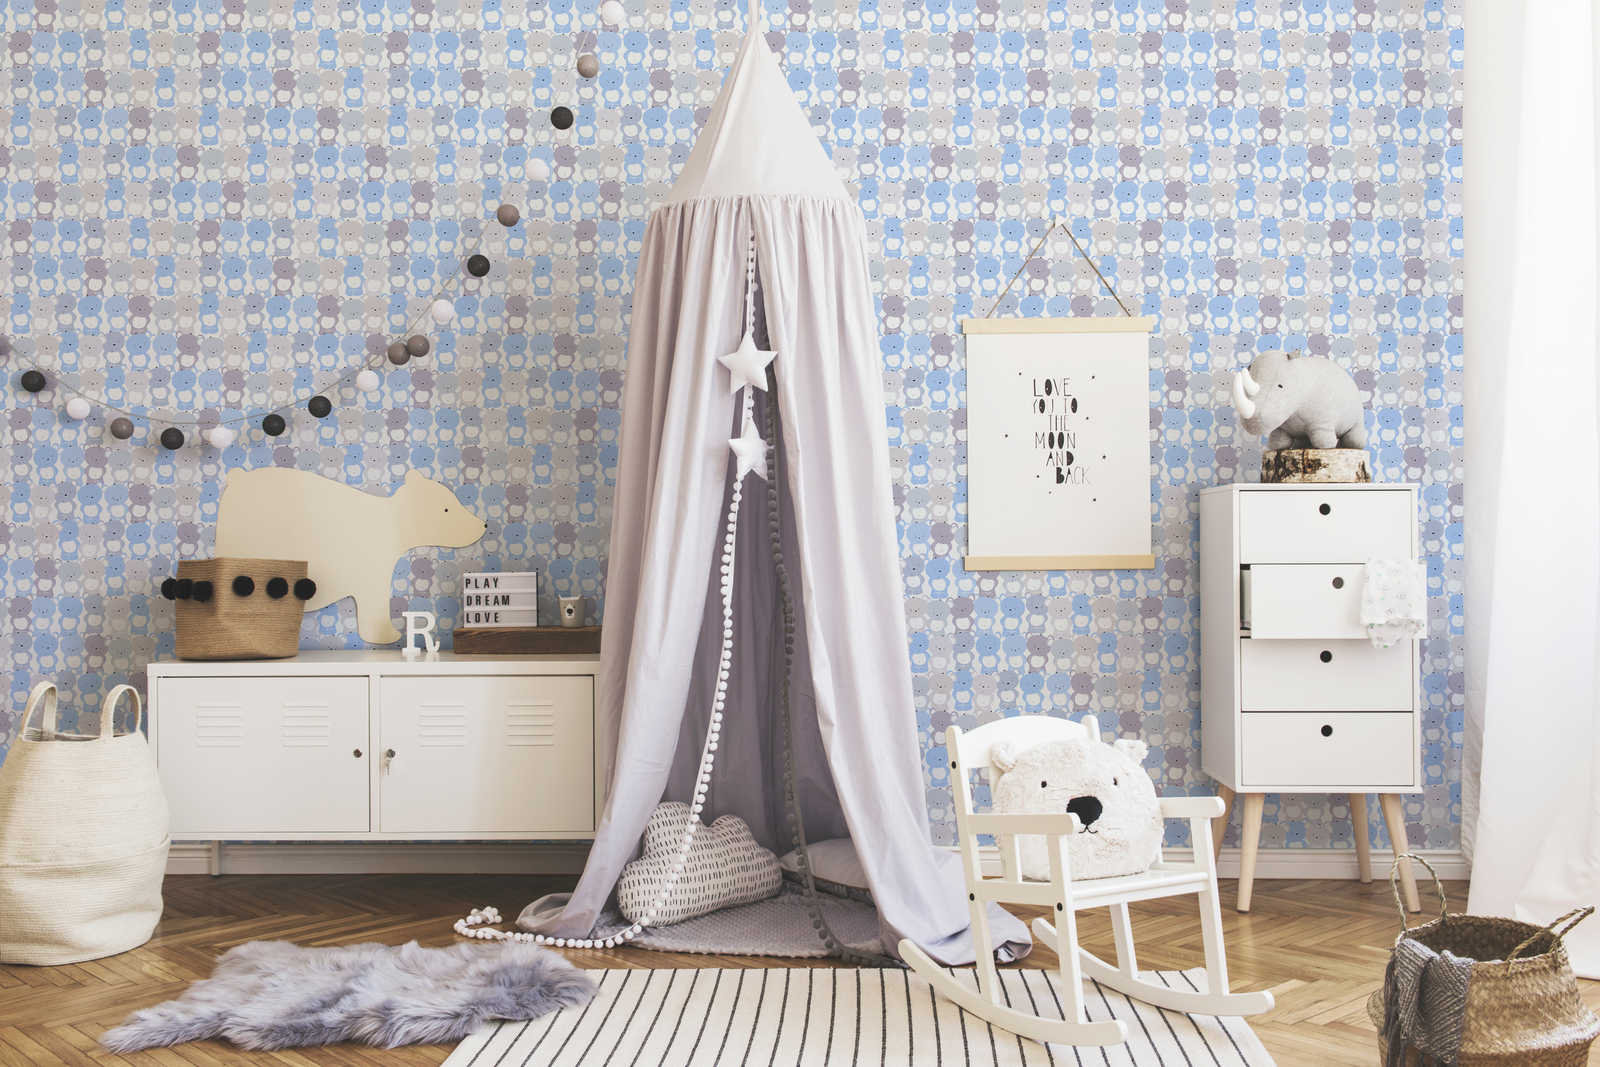             Papel pintado infantil habitación de los niños patrón de oso - azul, gris, blanco
        